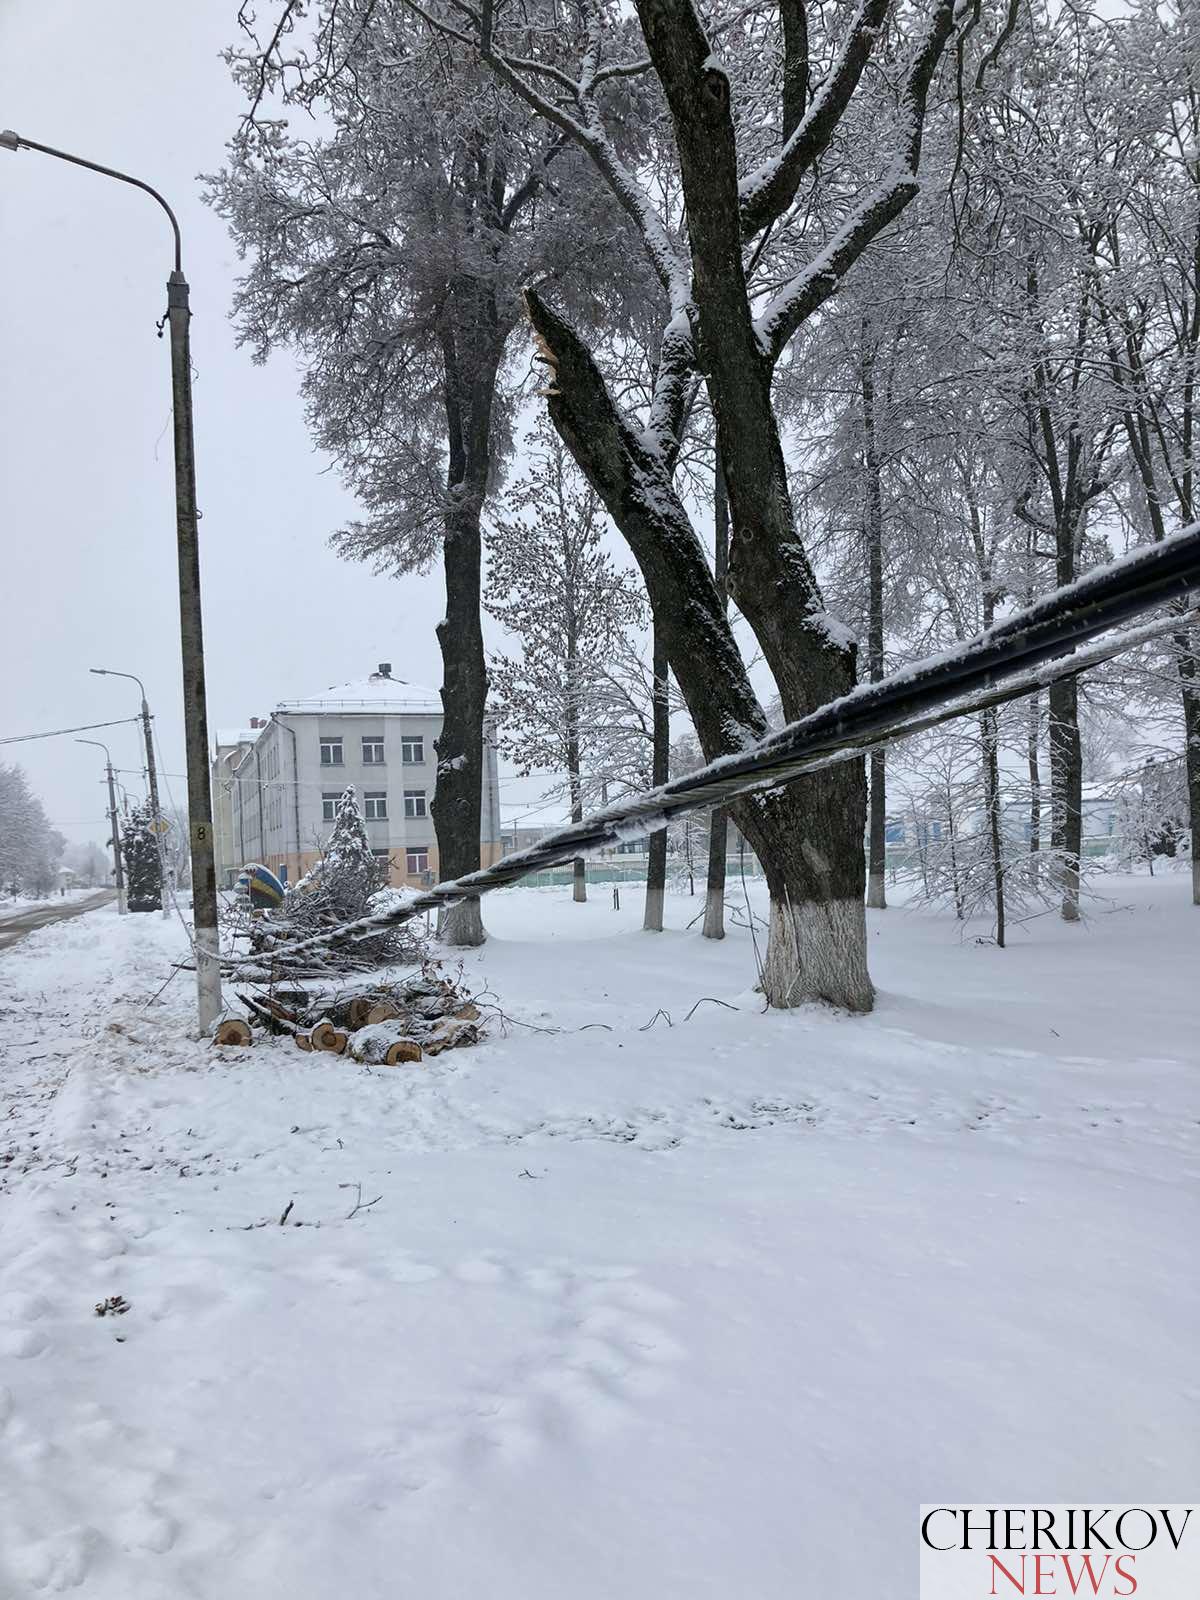 Последствия снегопада в Чериковском районе: электричество есть, но не везде